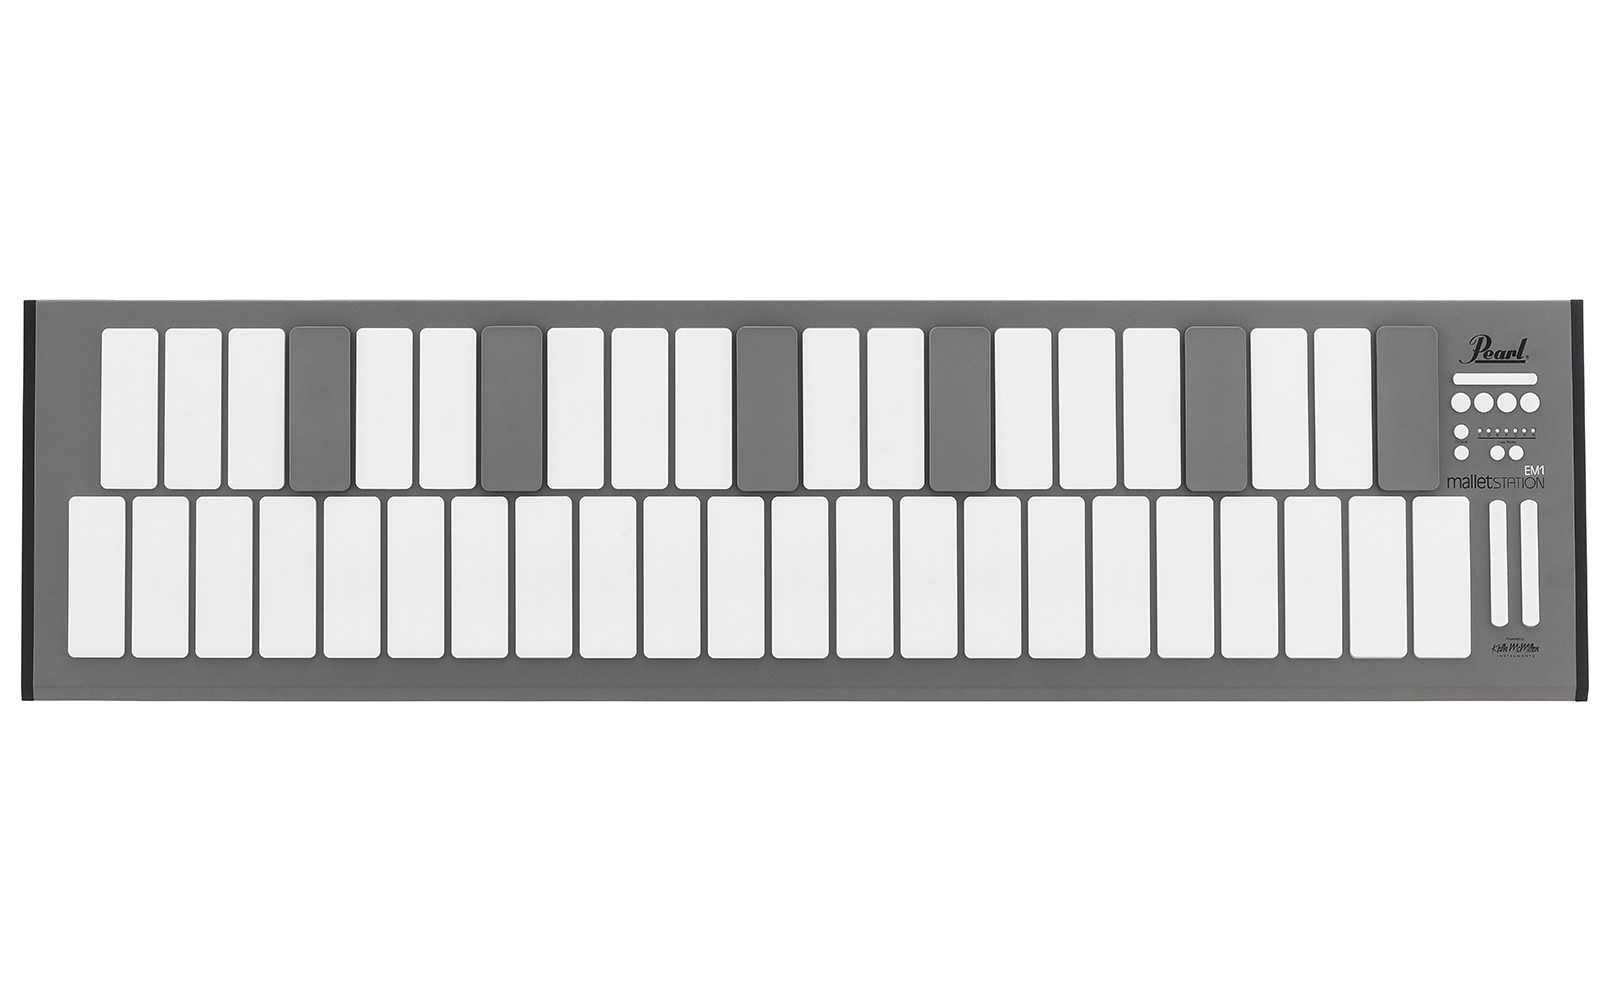 Hlavní obrázek MIDI kontrolery PEARL EM-1 malletSTATION